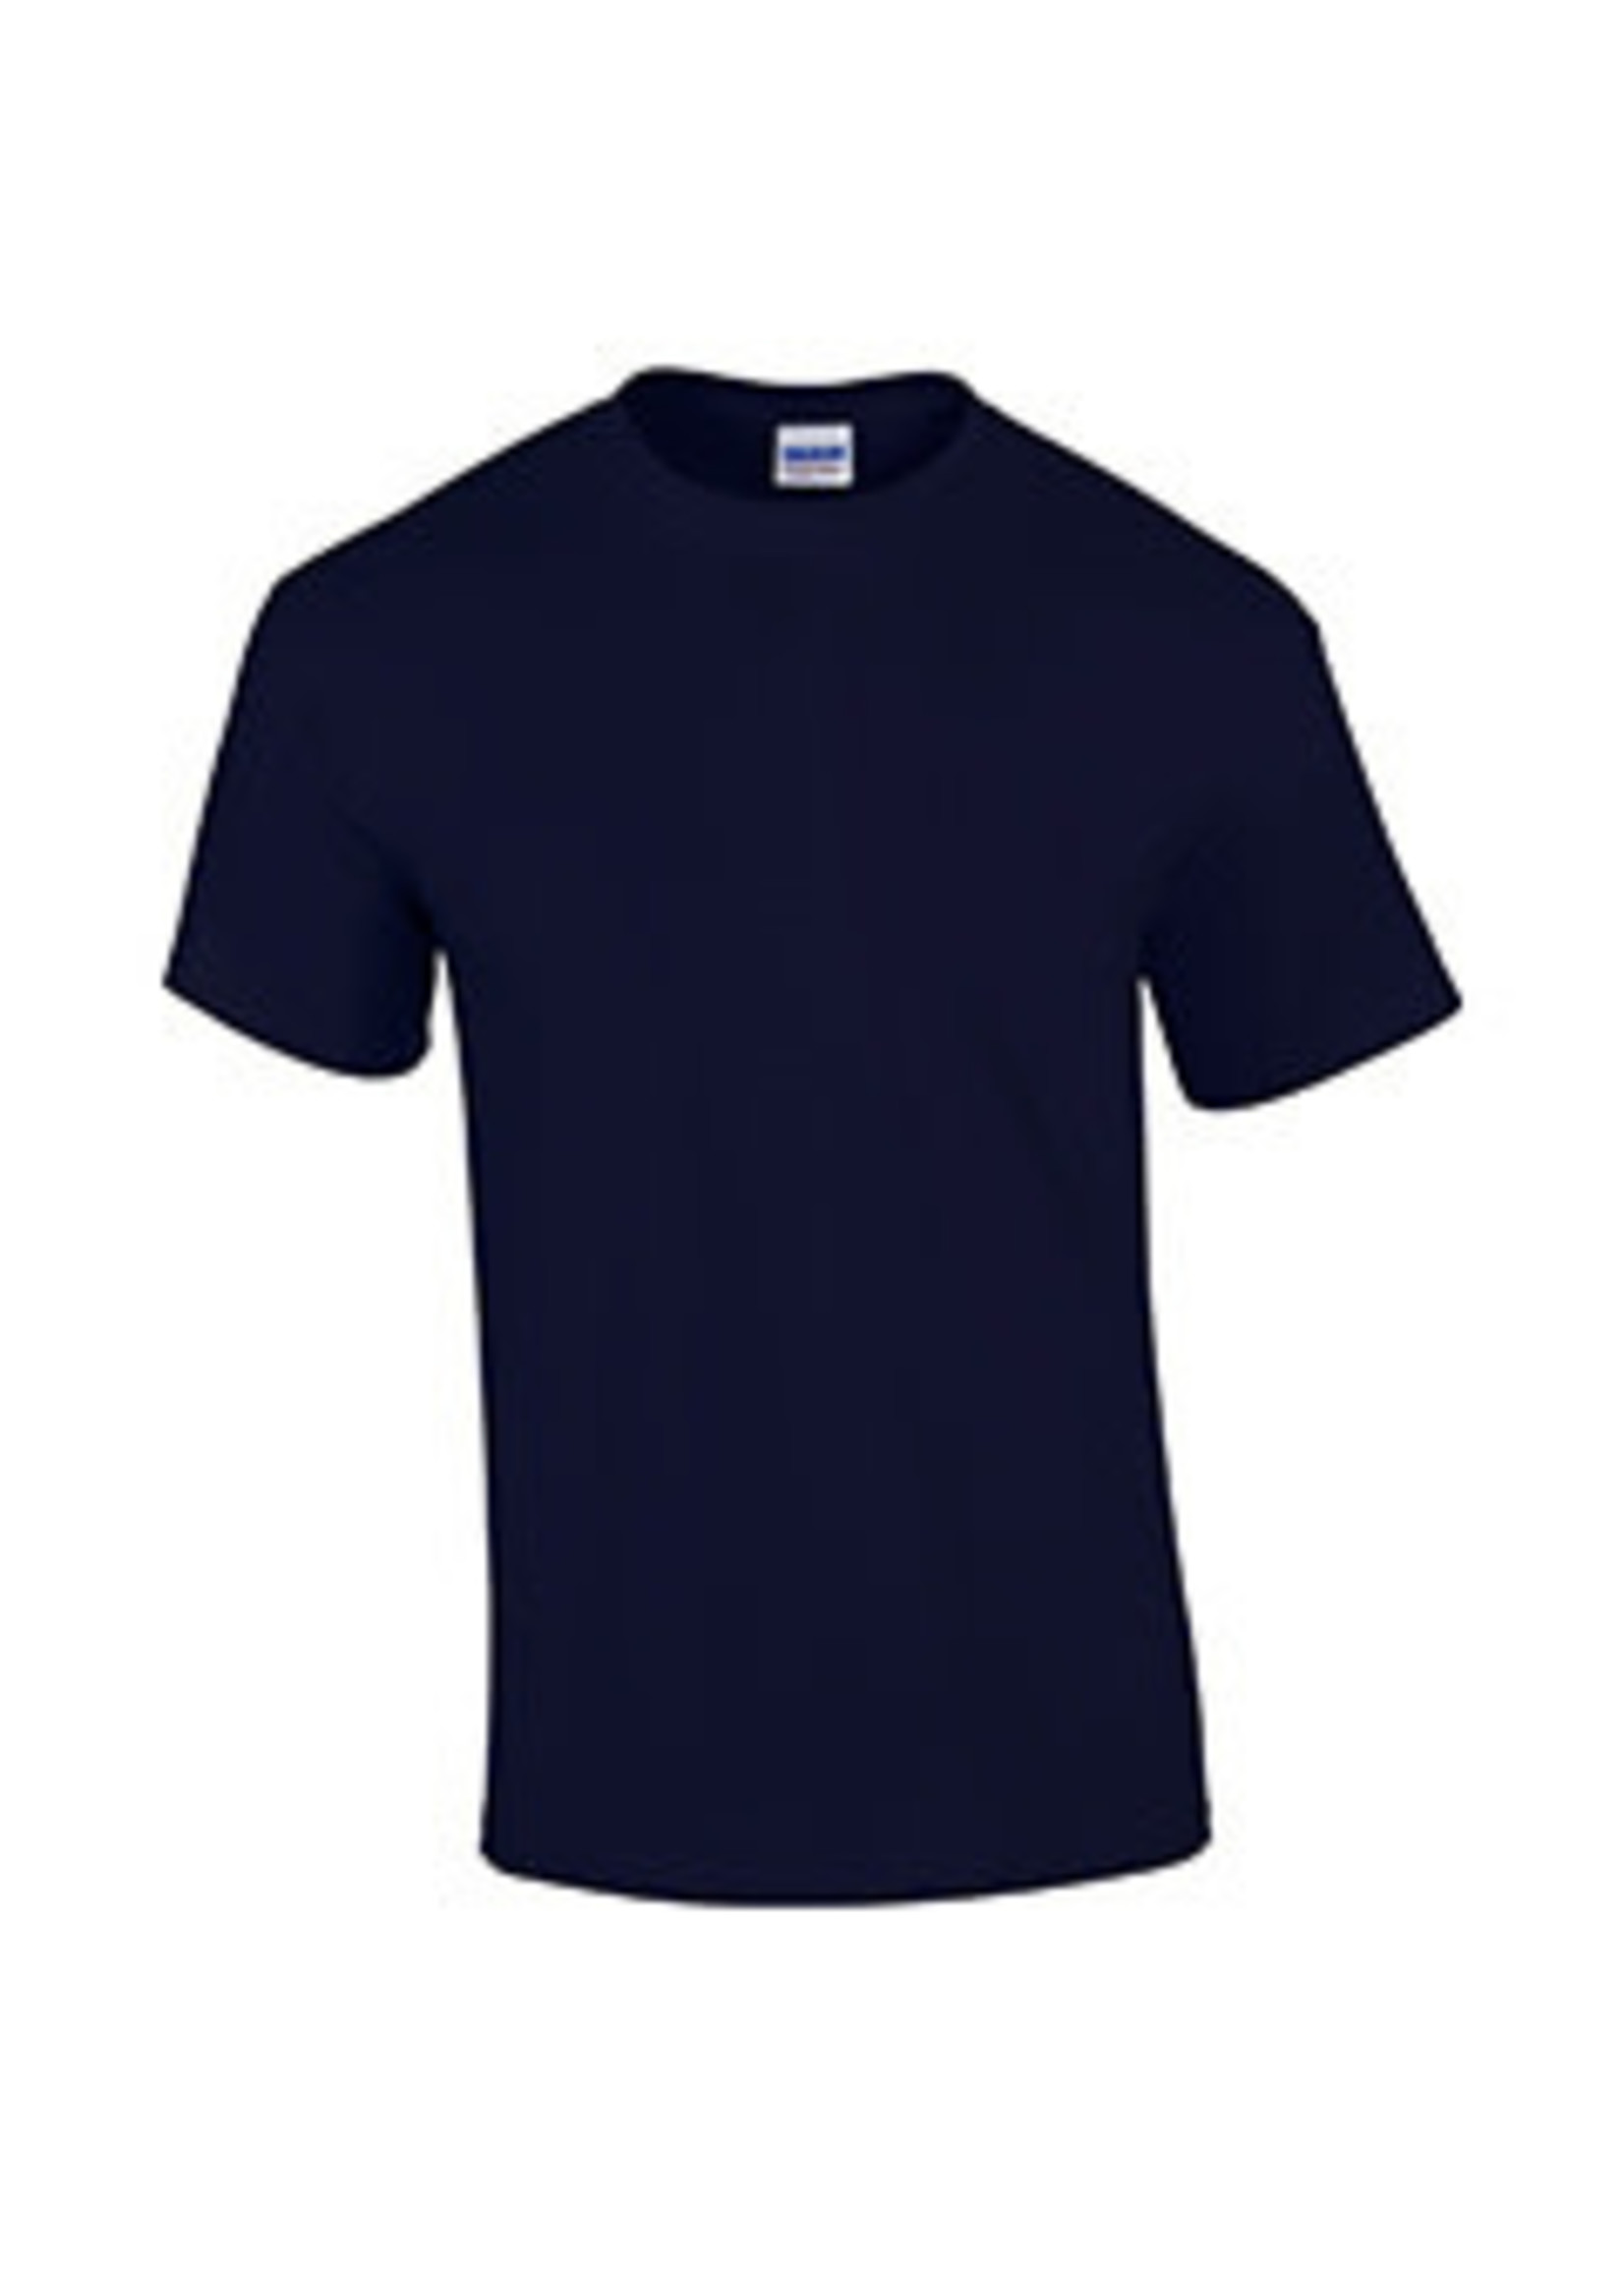 NON-UNIFORM Shirt - JD Unisex Football s/s t-Shirt